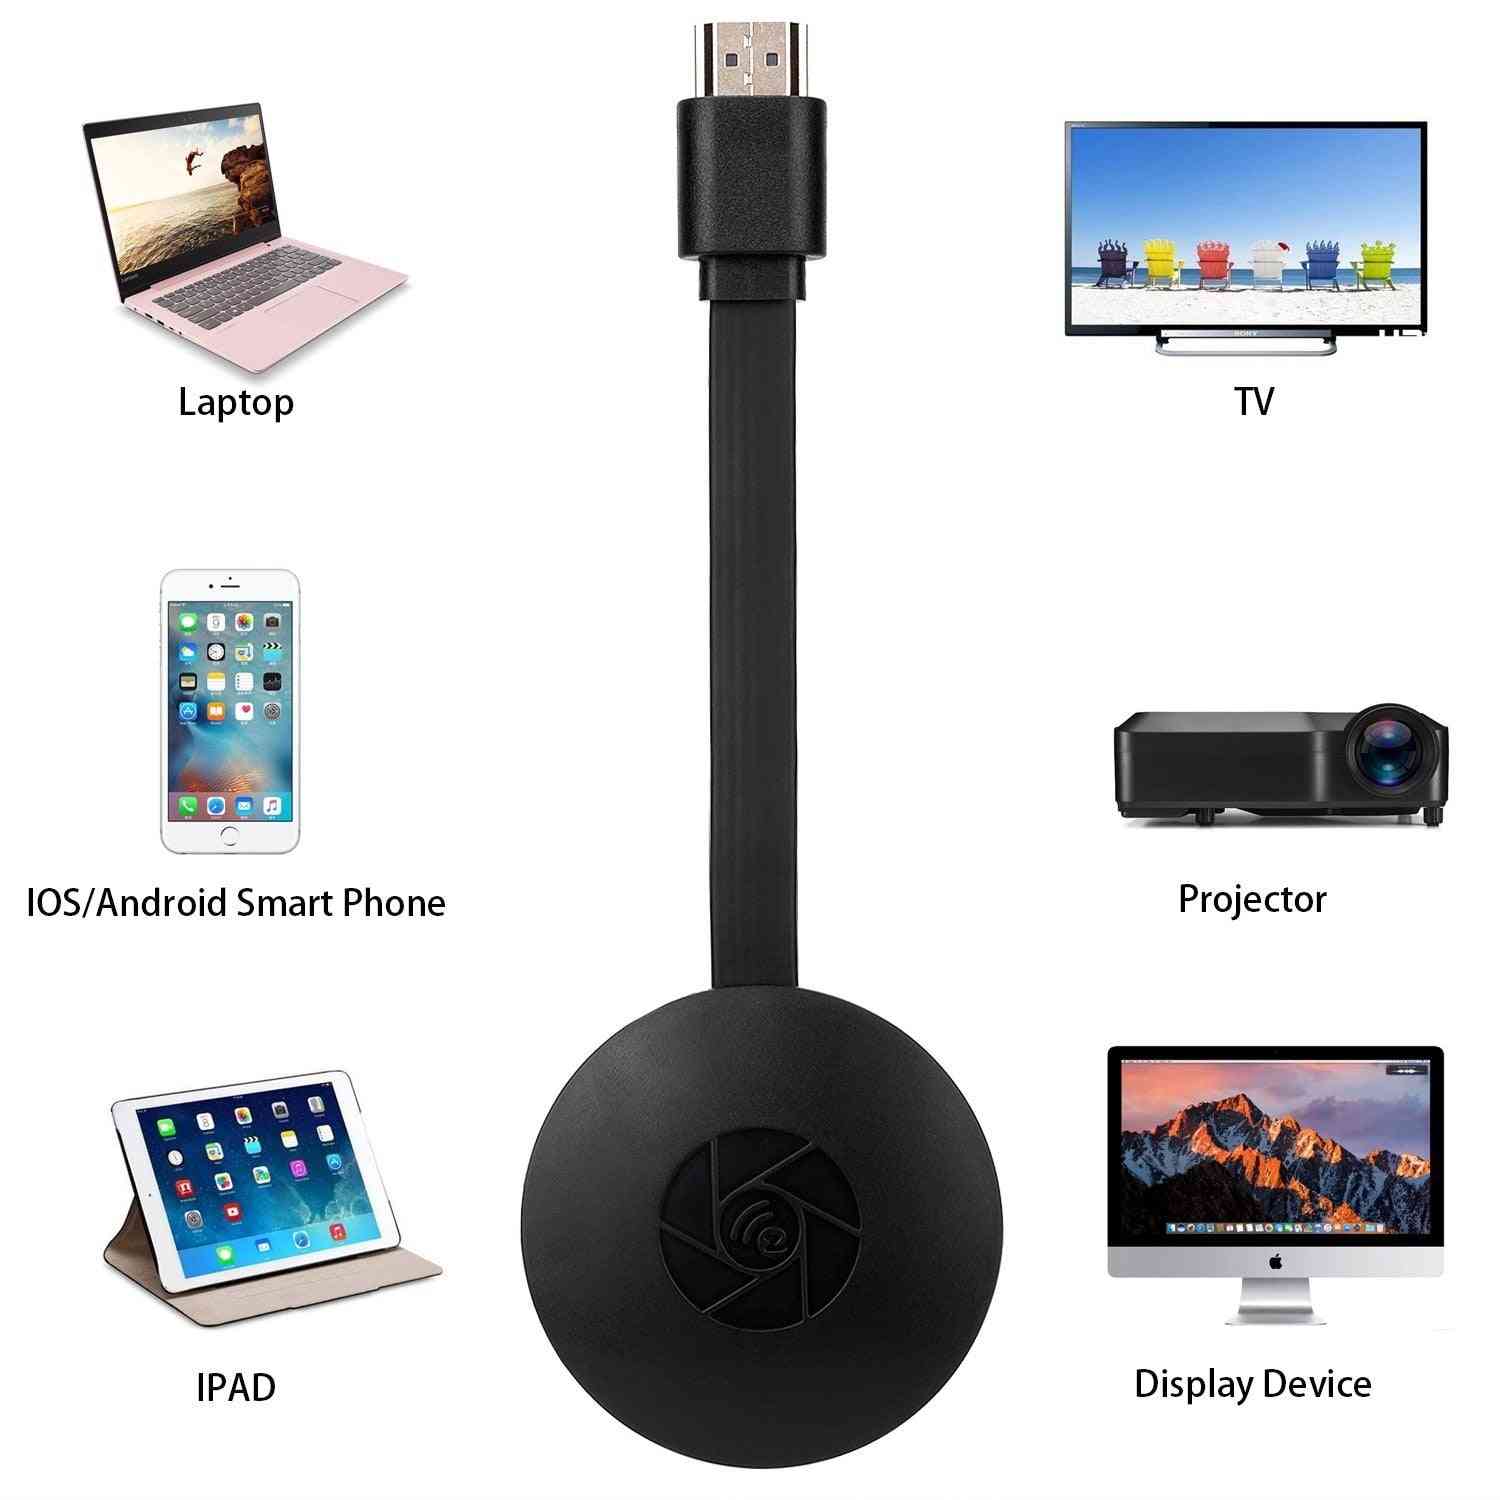 безжичен донгъл дисплей, wifi преносим дисплей приемник 1080p hdmi miracast донгъл за ios iphone ipad / mac / android смартфони (черен)